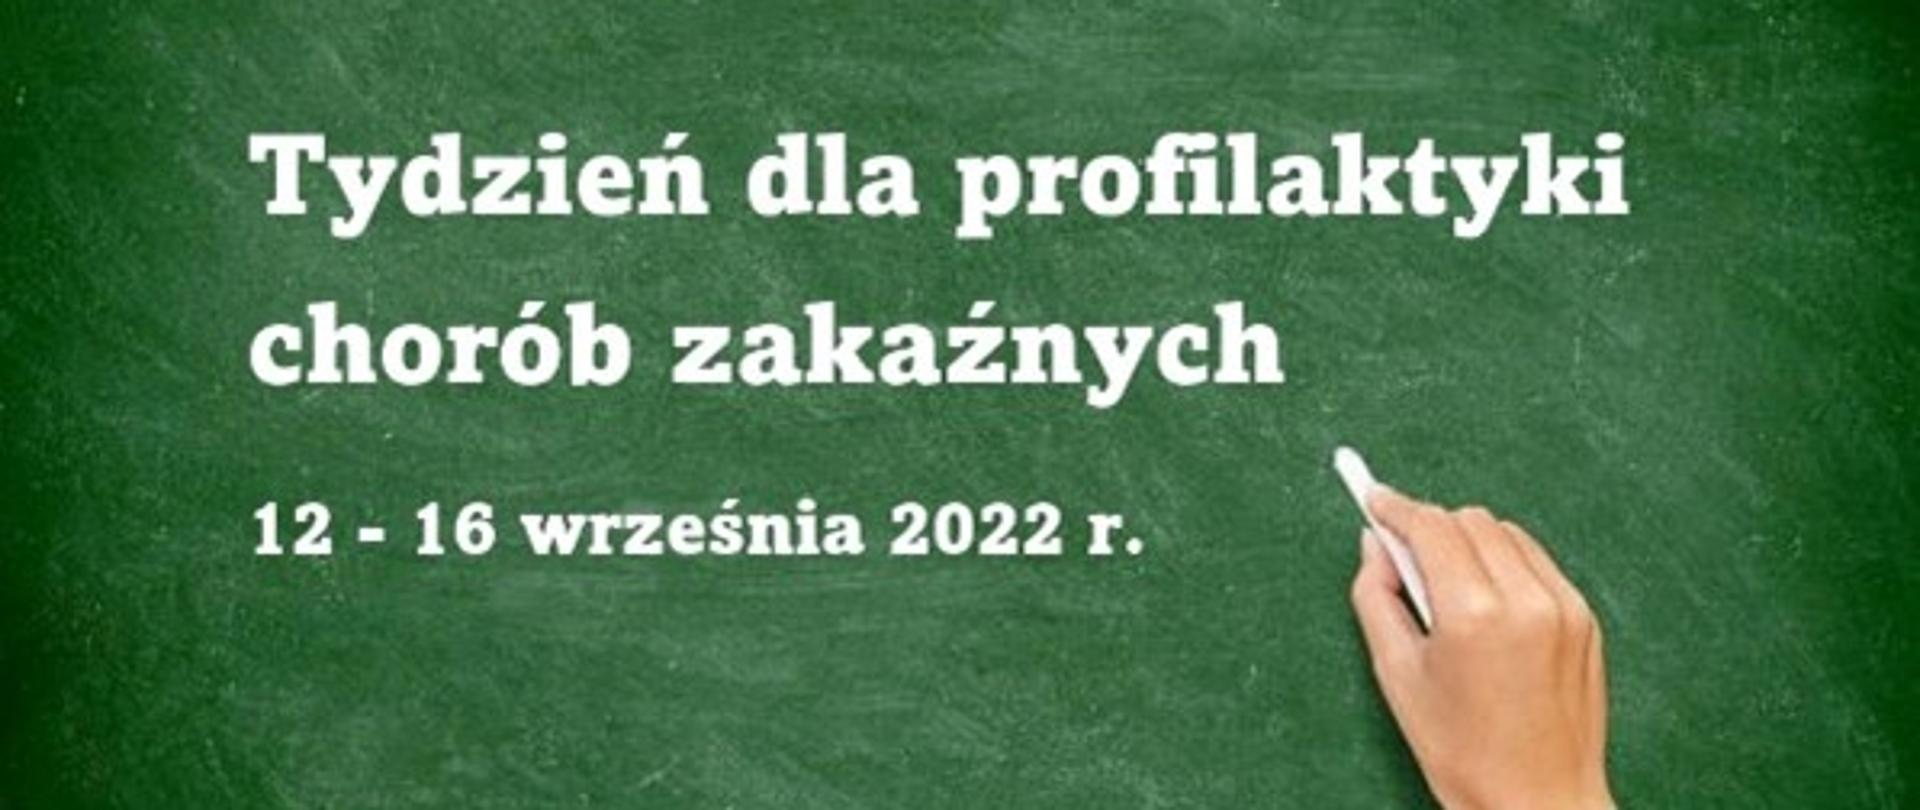 Ilustracja przedstawiająca dłoń z kredą oraz tablicę na której jest napisane: Tydzień dla profilaktyki chorób zakaźnych 12 - 16 września 2022 r..